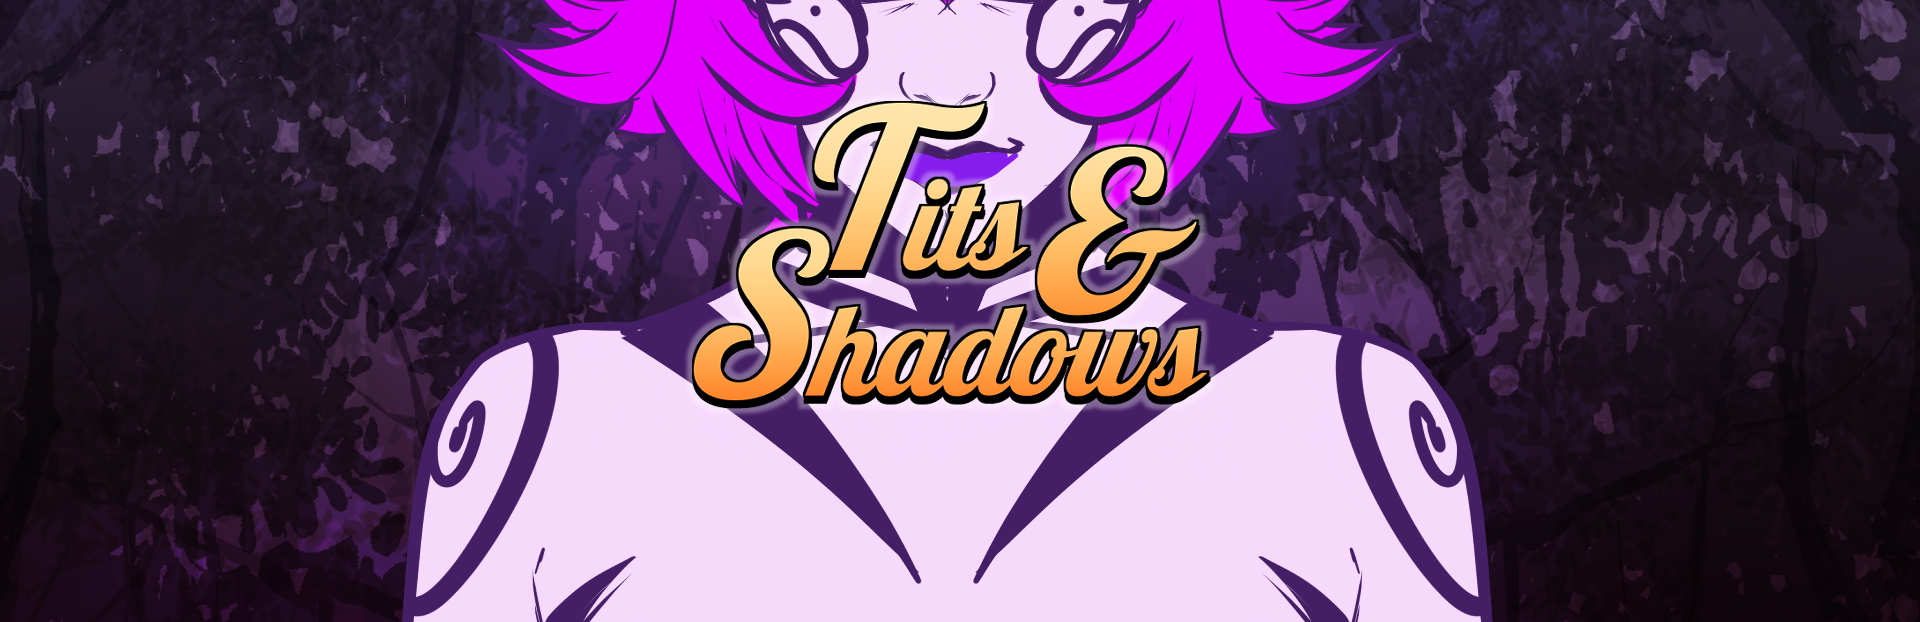 Tits & Shadows